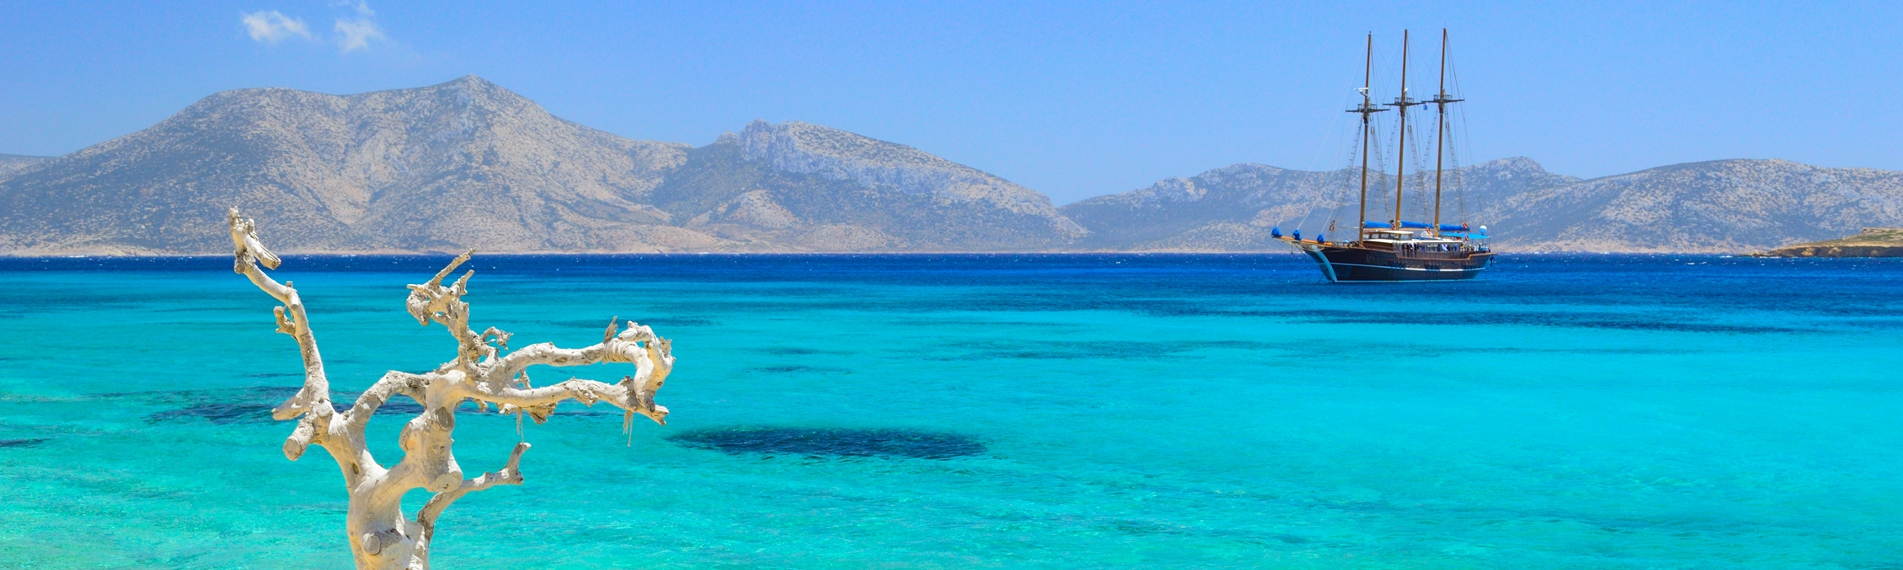 El mar de Koufonissi, donde un velero navega a través de las olas de las islas Cícladas